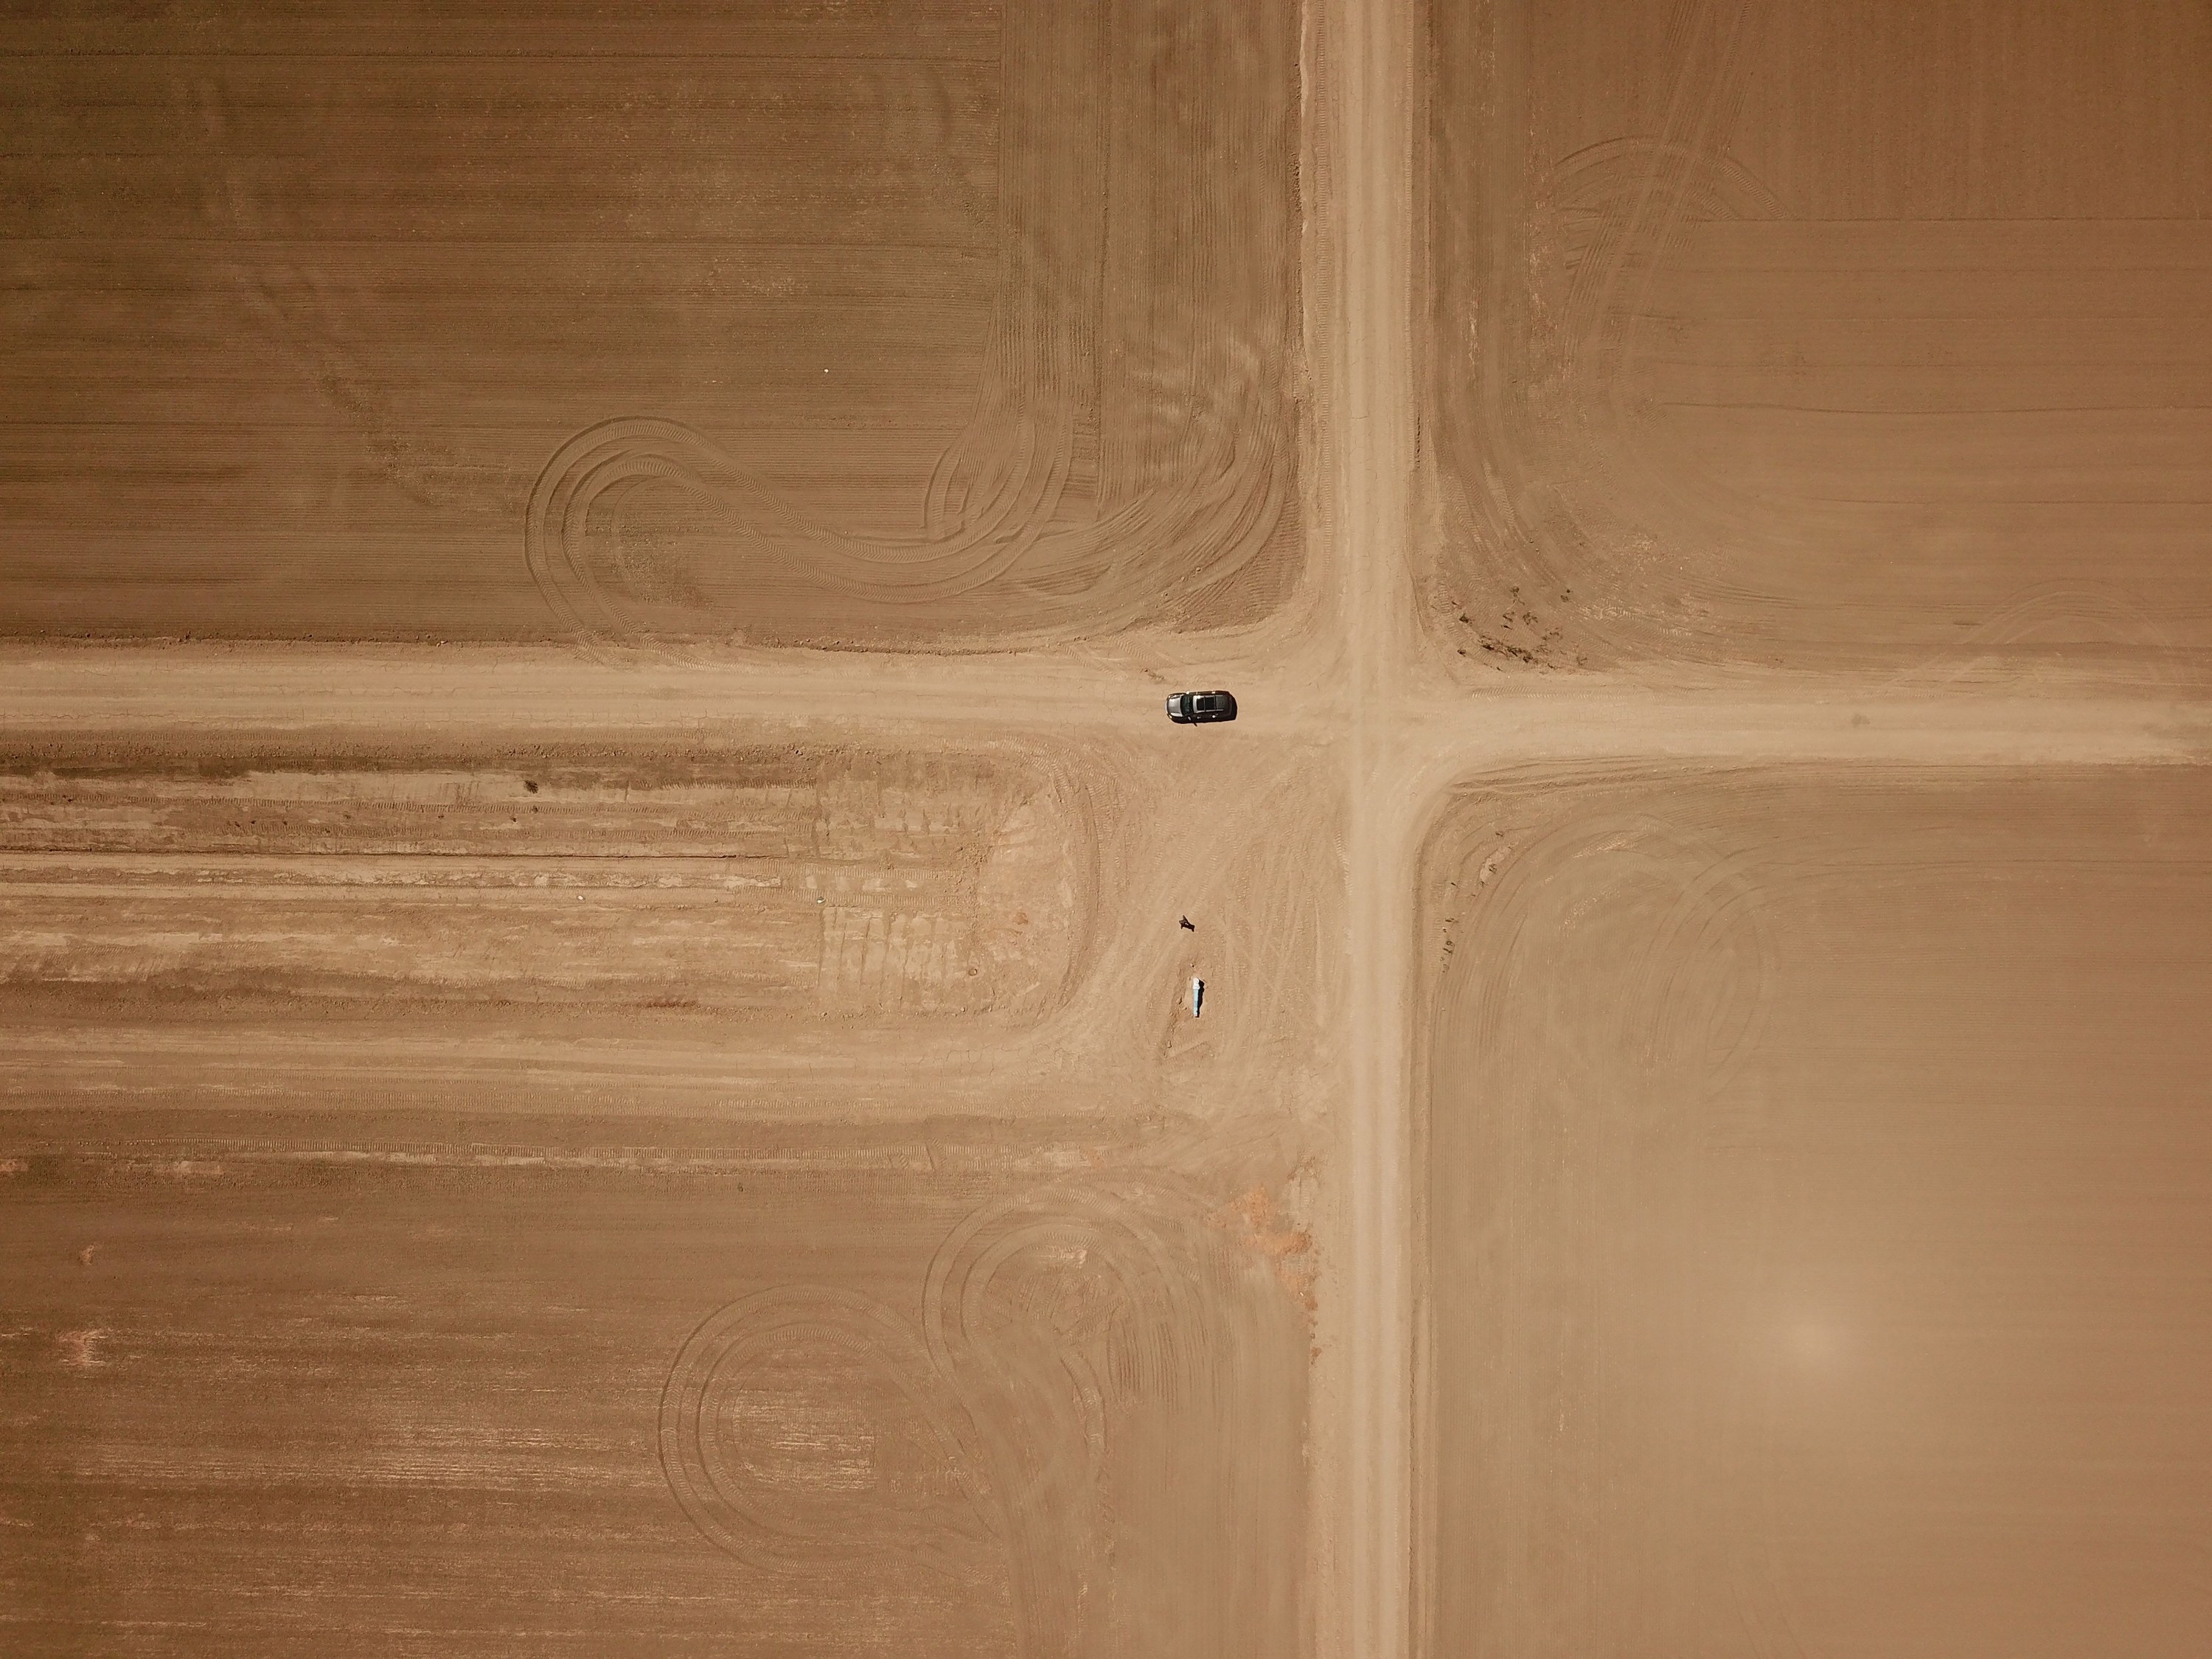 A car drives through a desolate desert area